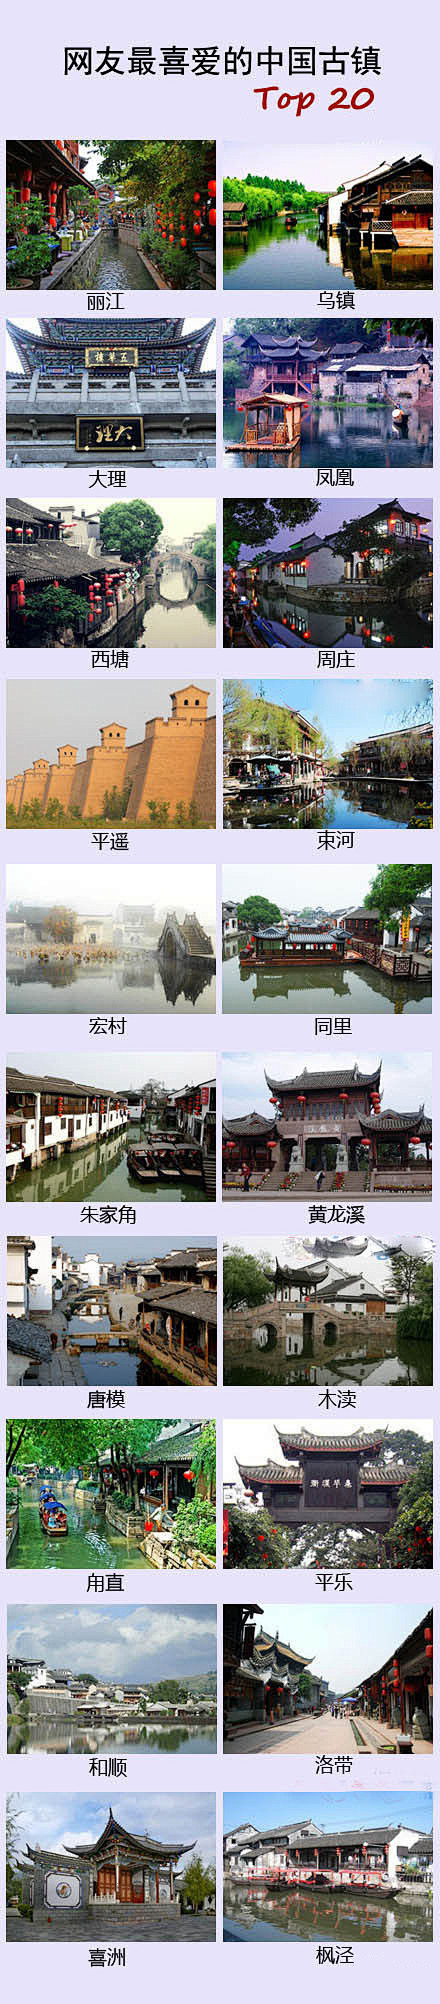 网友最想去的20个古镇——丽江、乌镇、大...